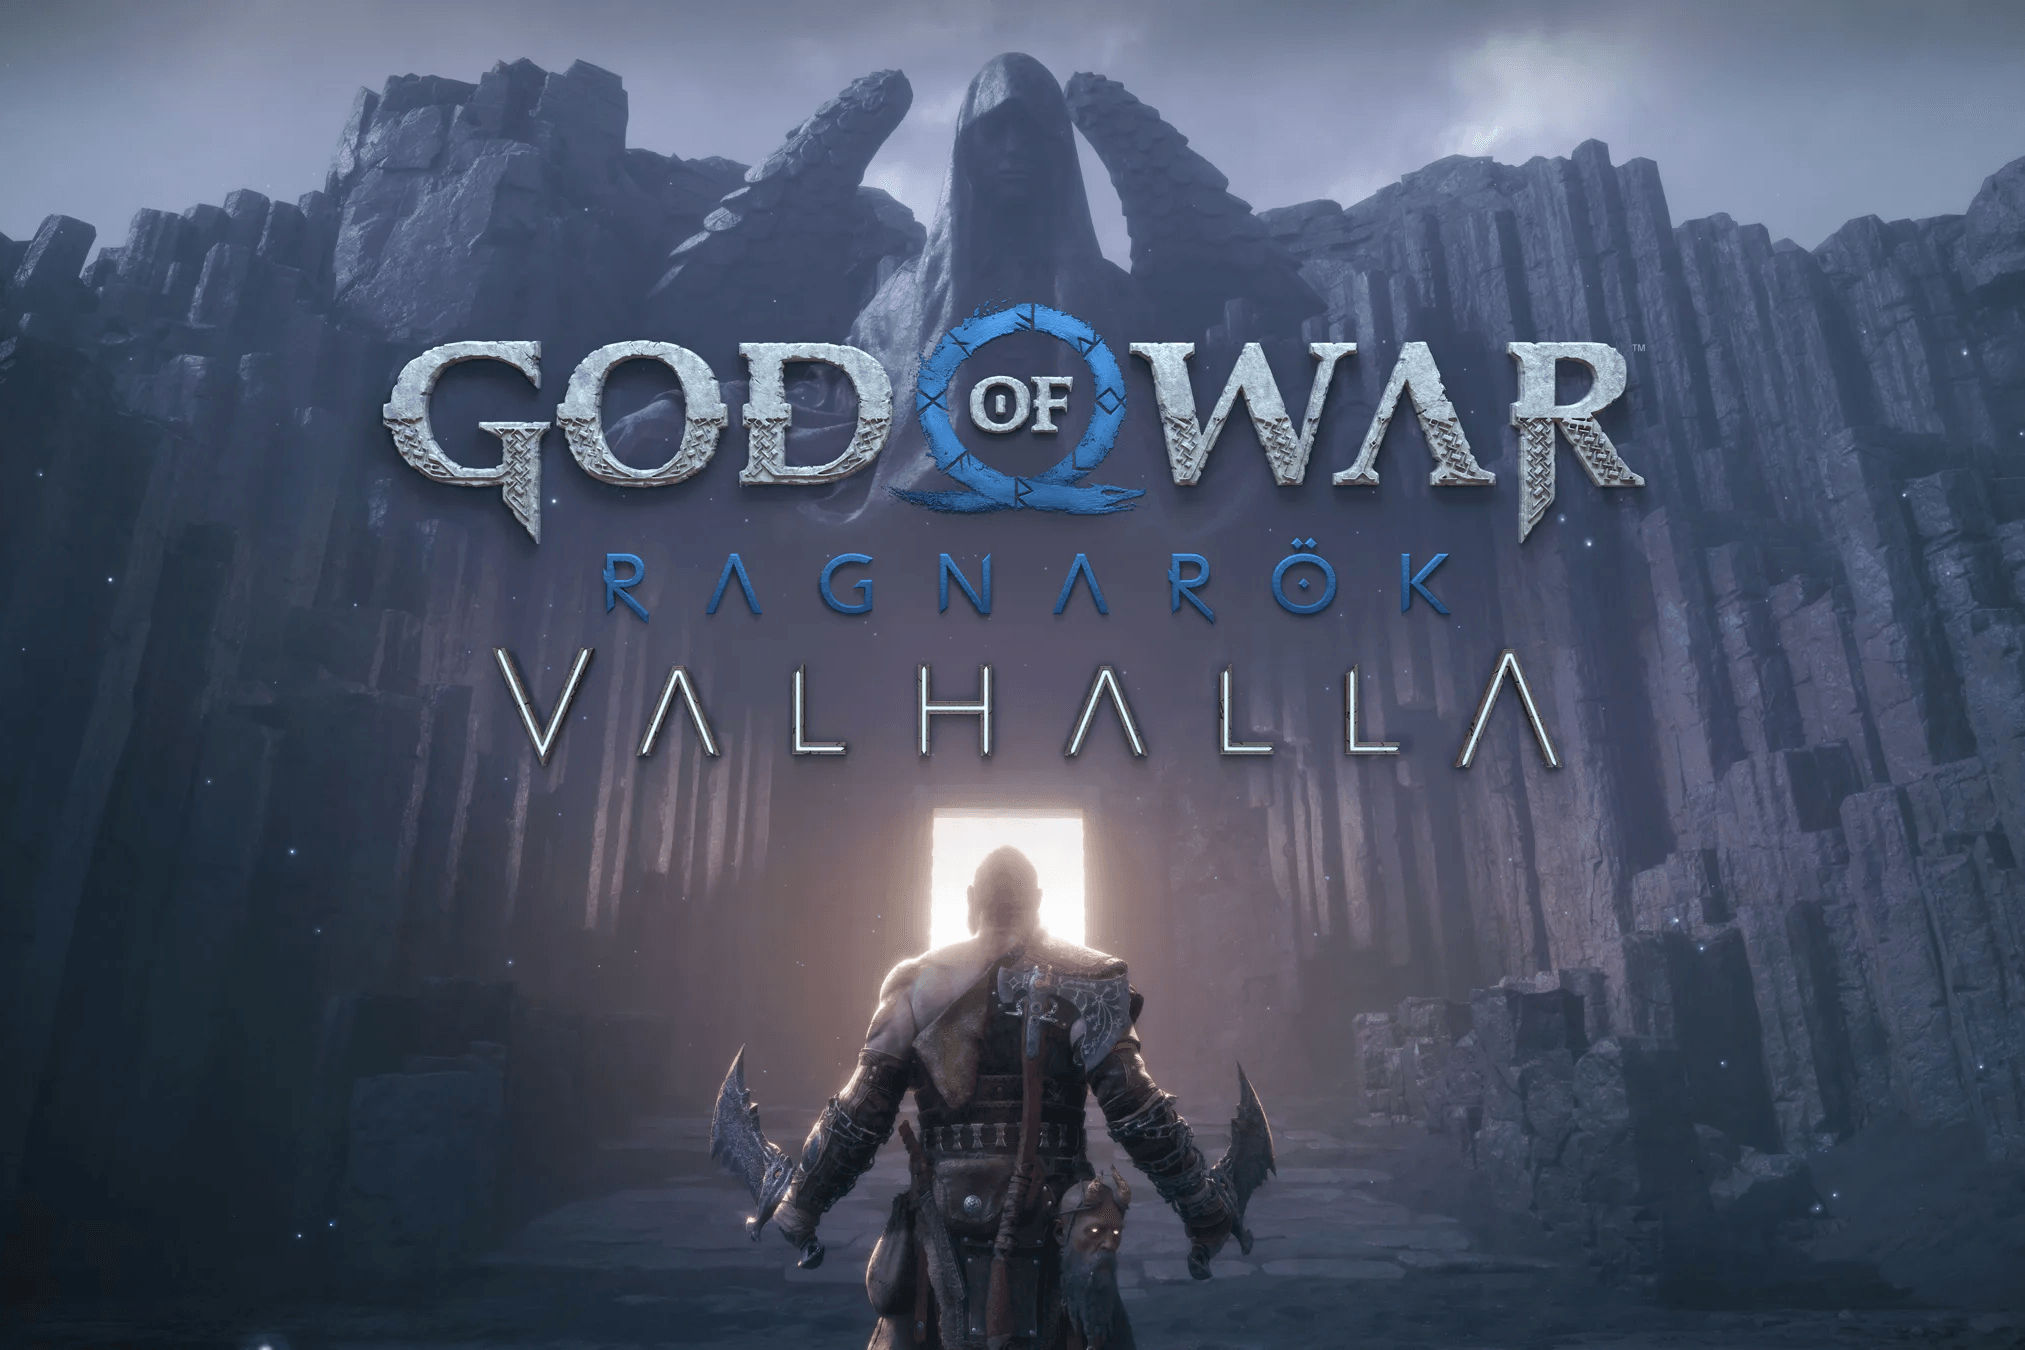 God of War Ragnarok Valhalla Mission List and Guide - News